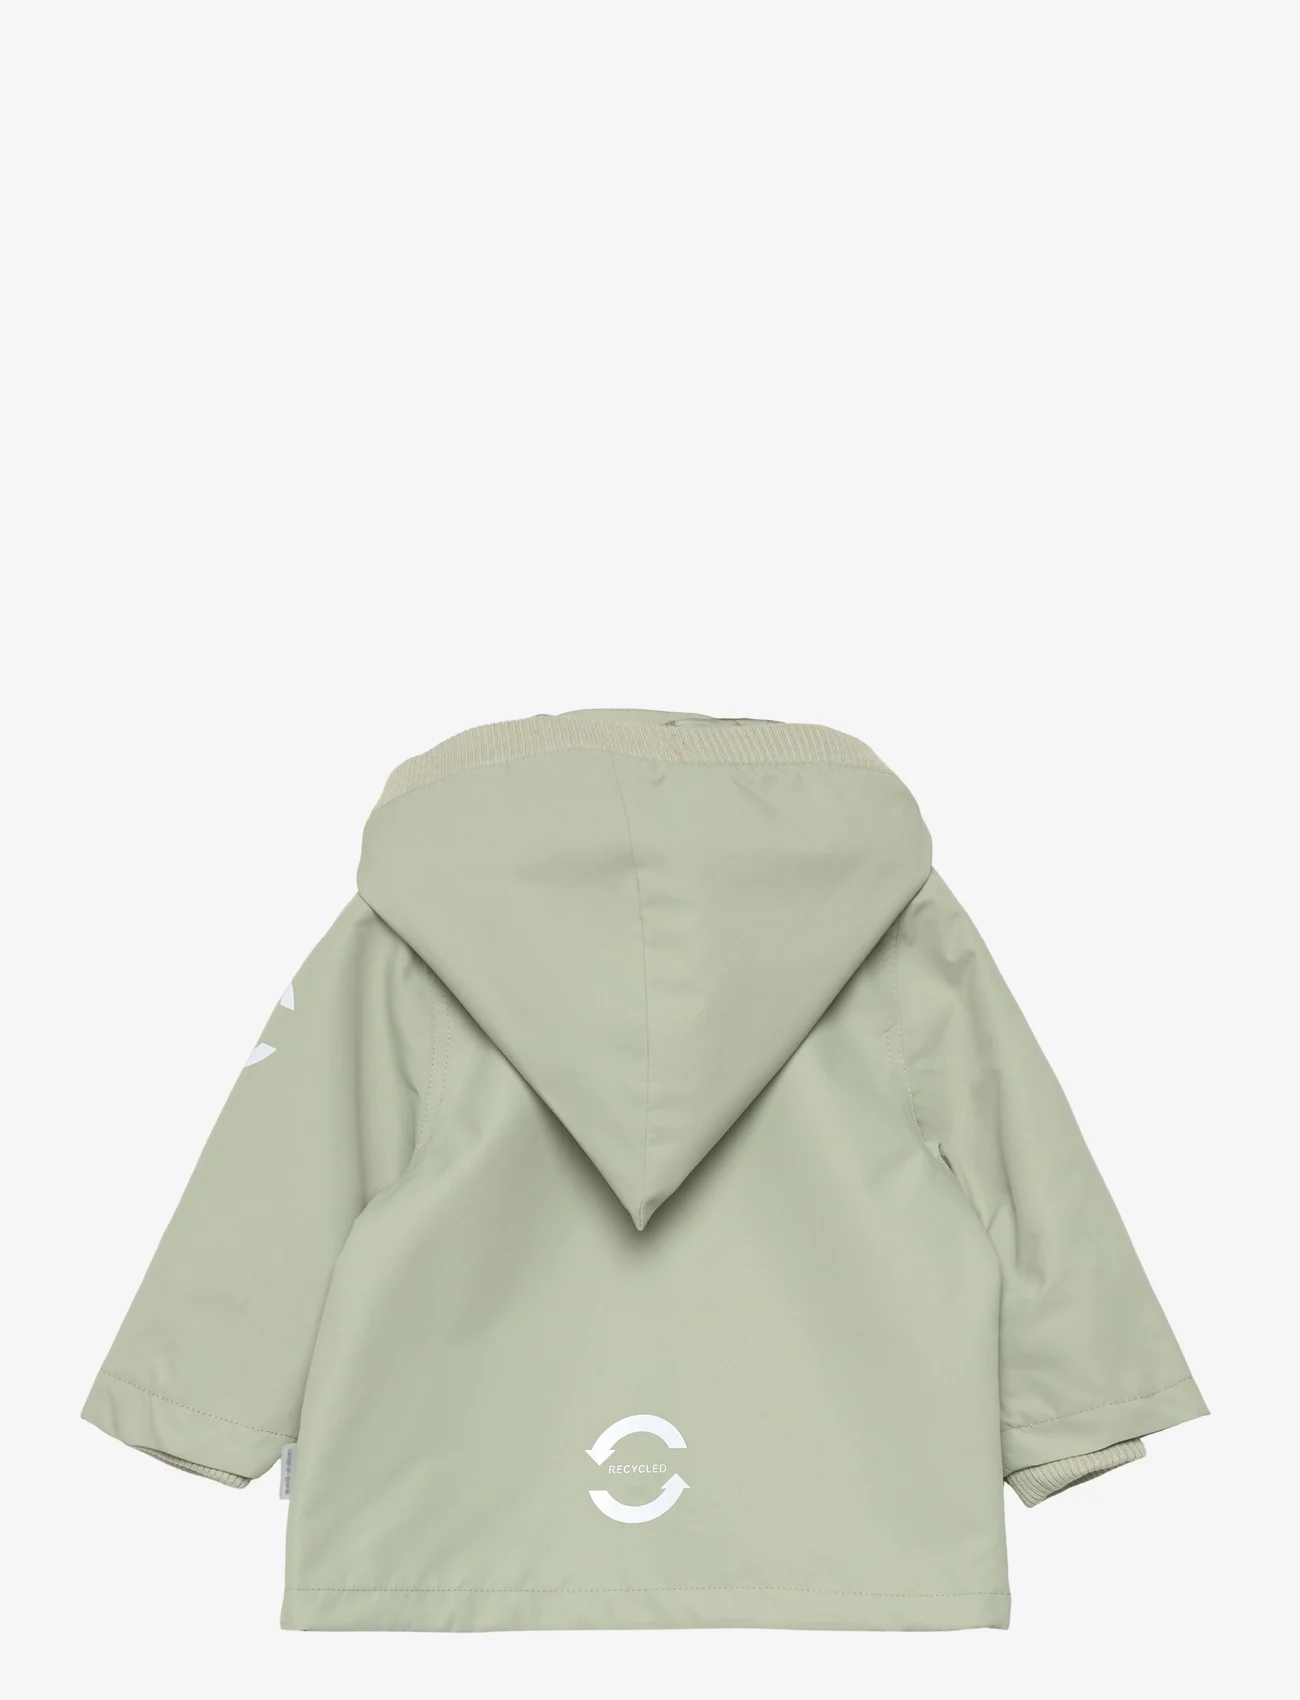 mikk-line - Polyester Baby Jacket - anoraker - desert sage - 1